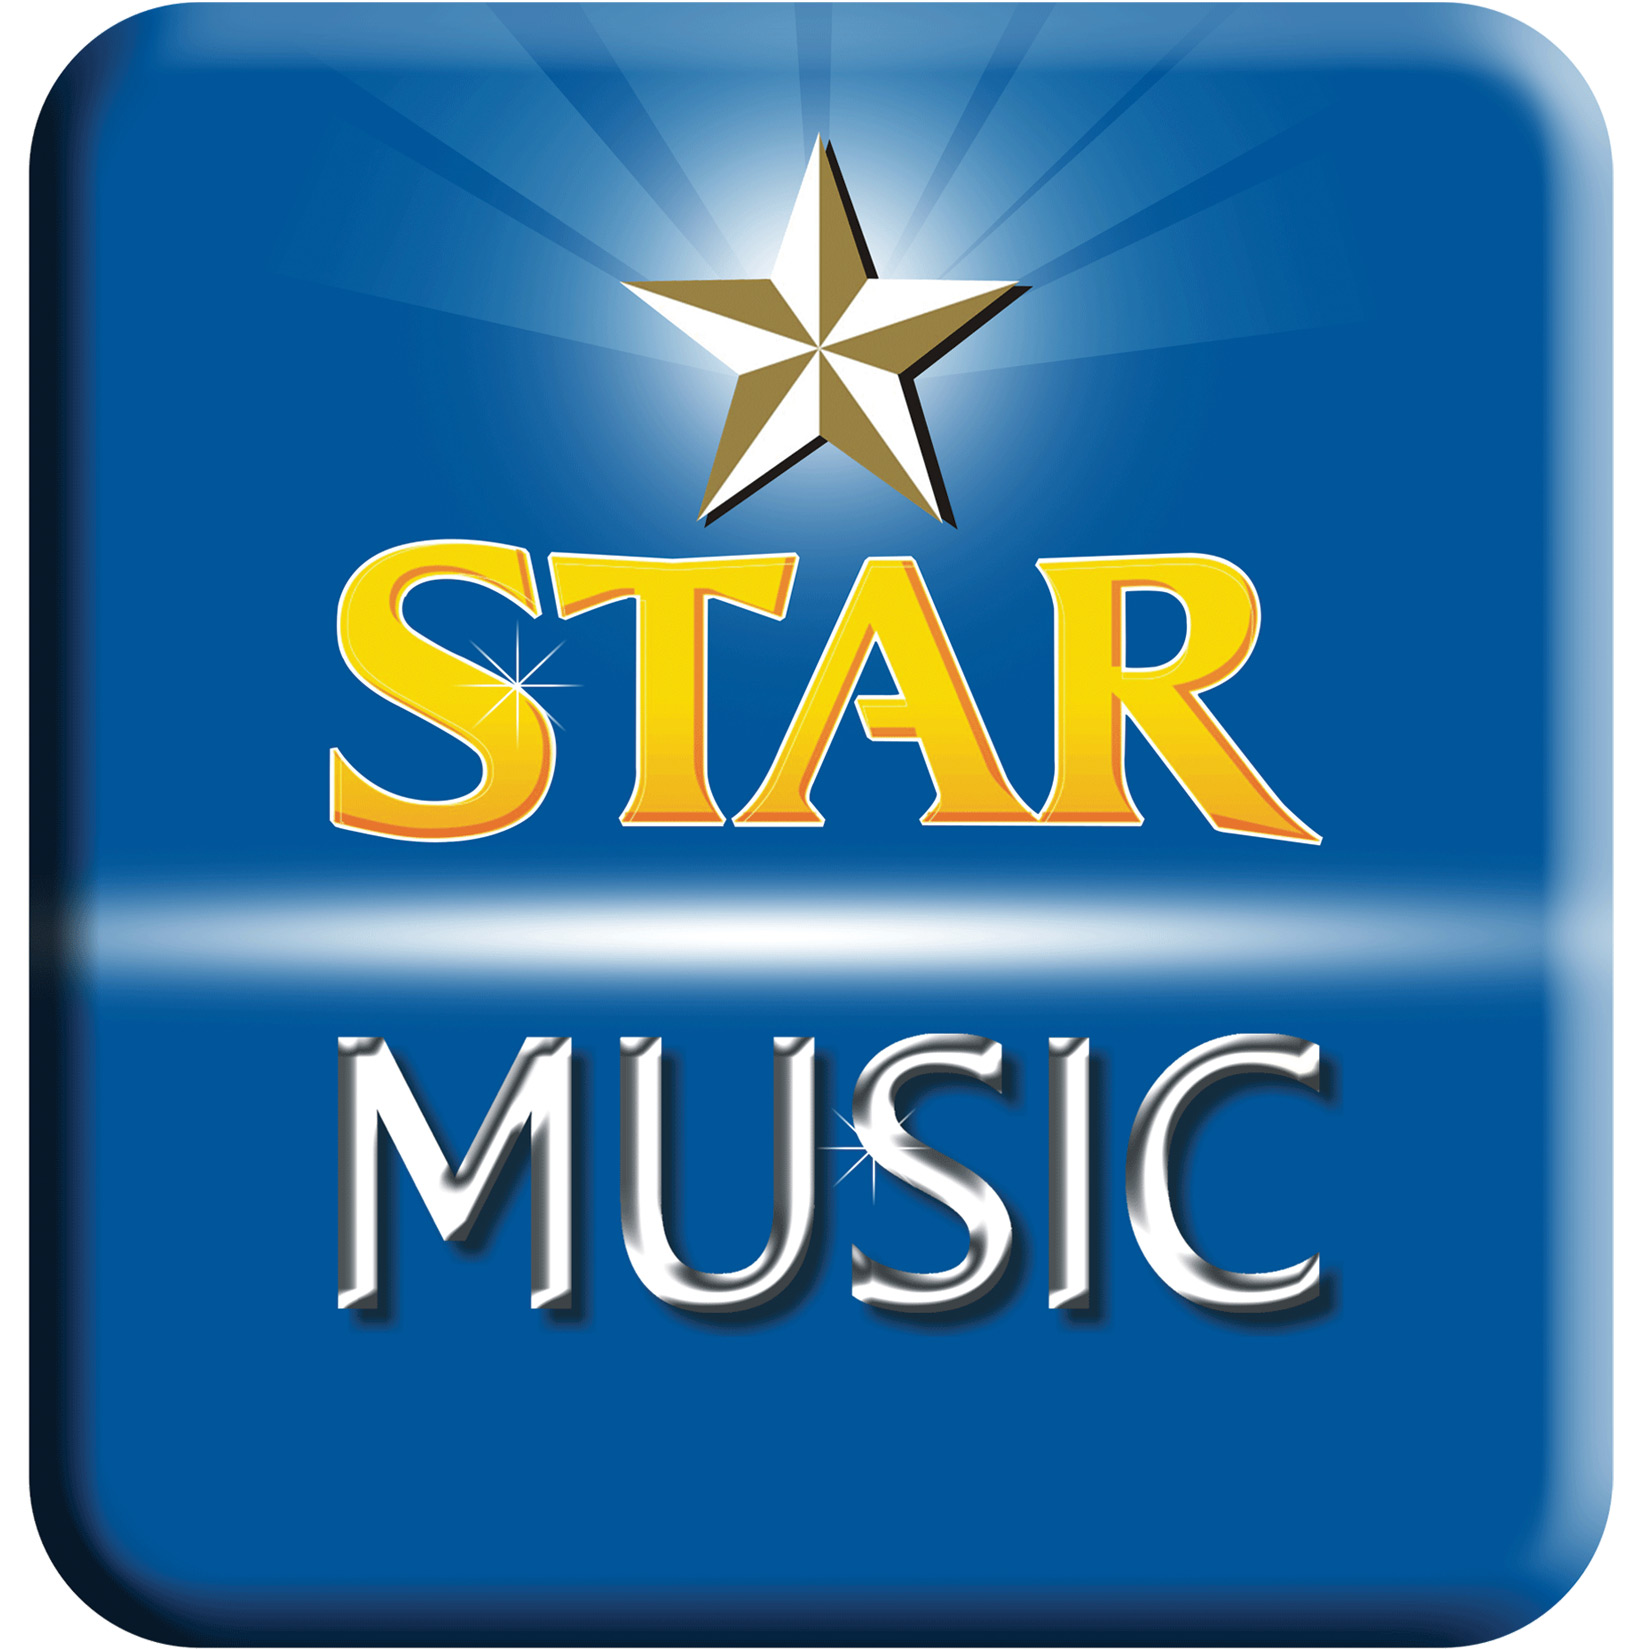 Music star Logos